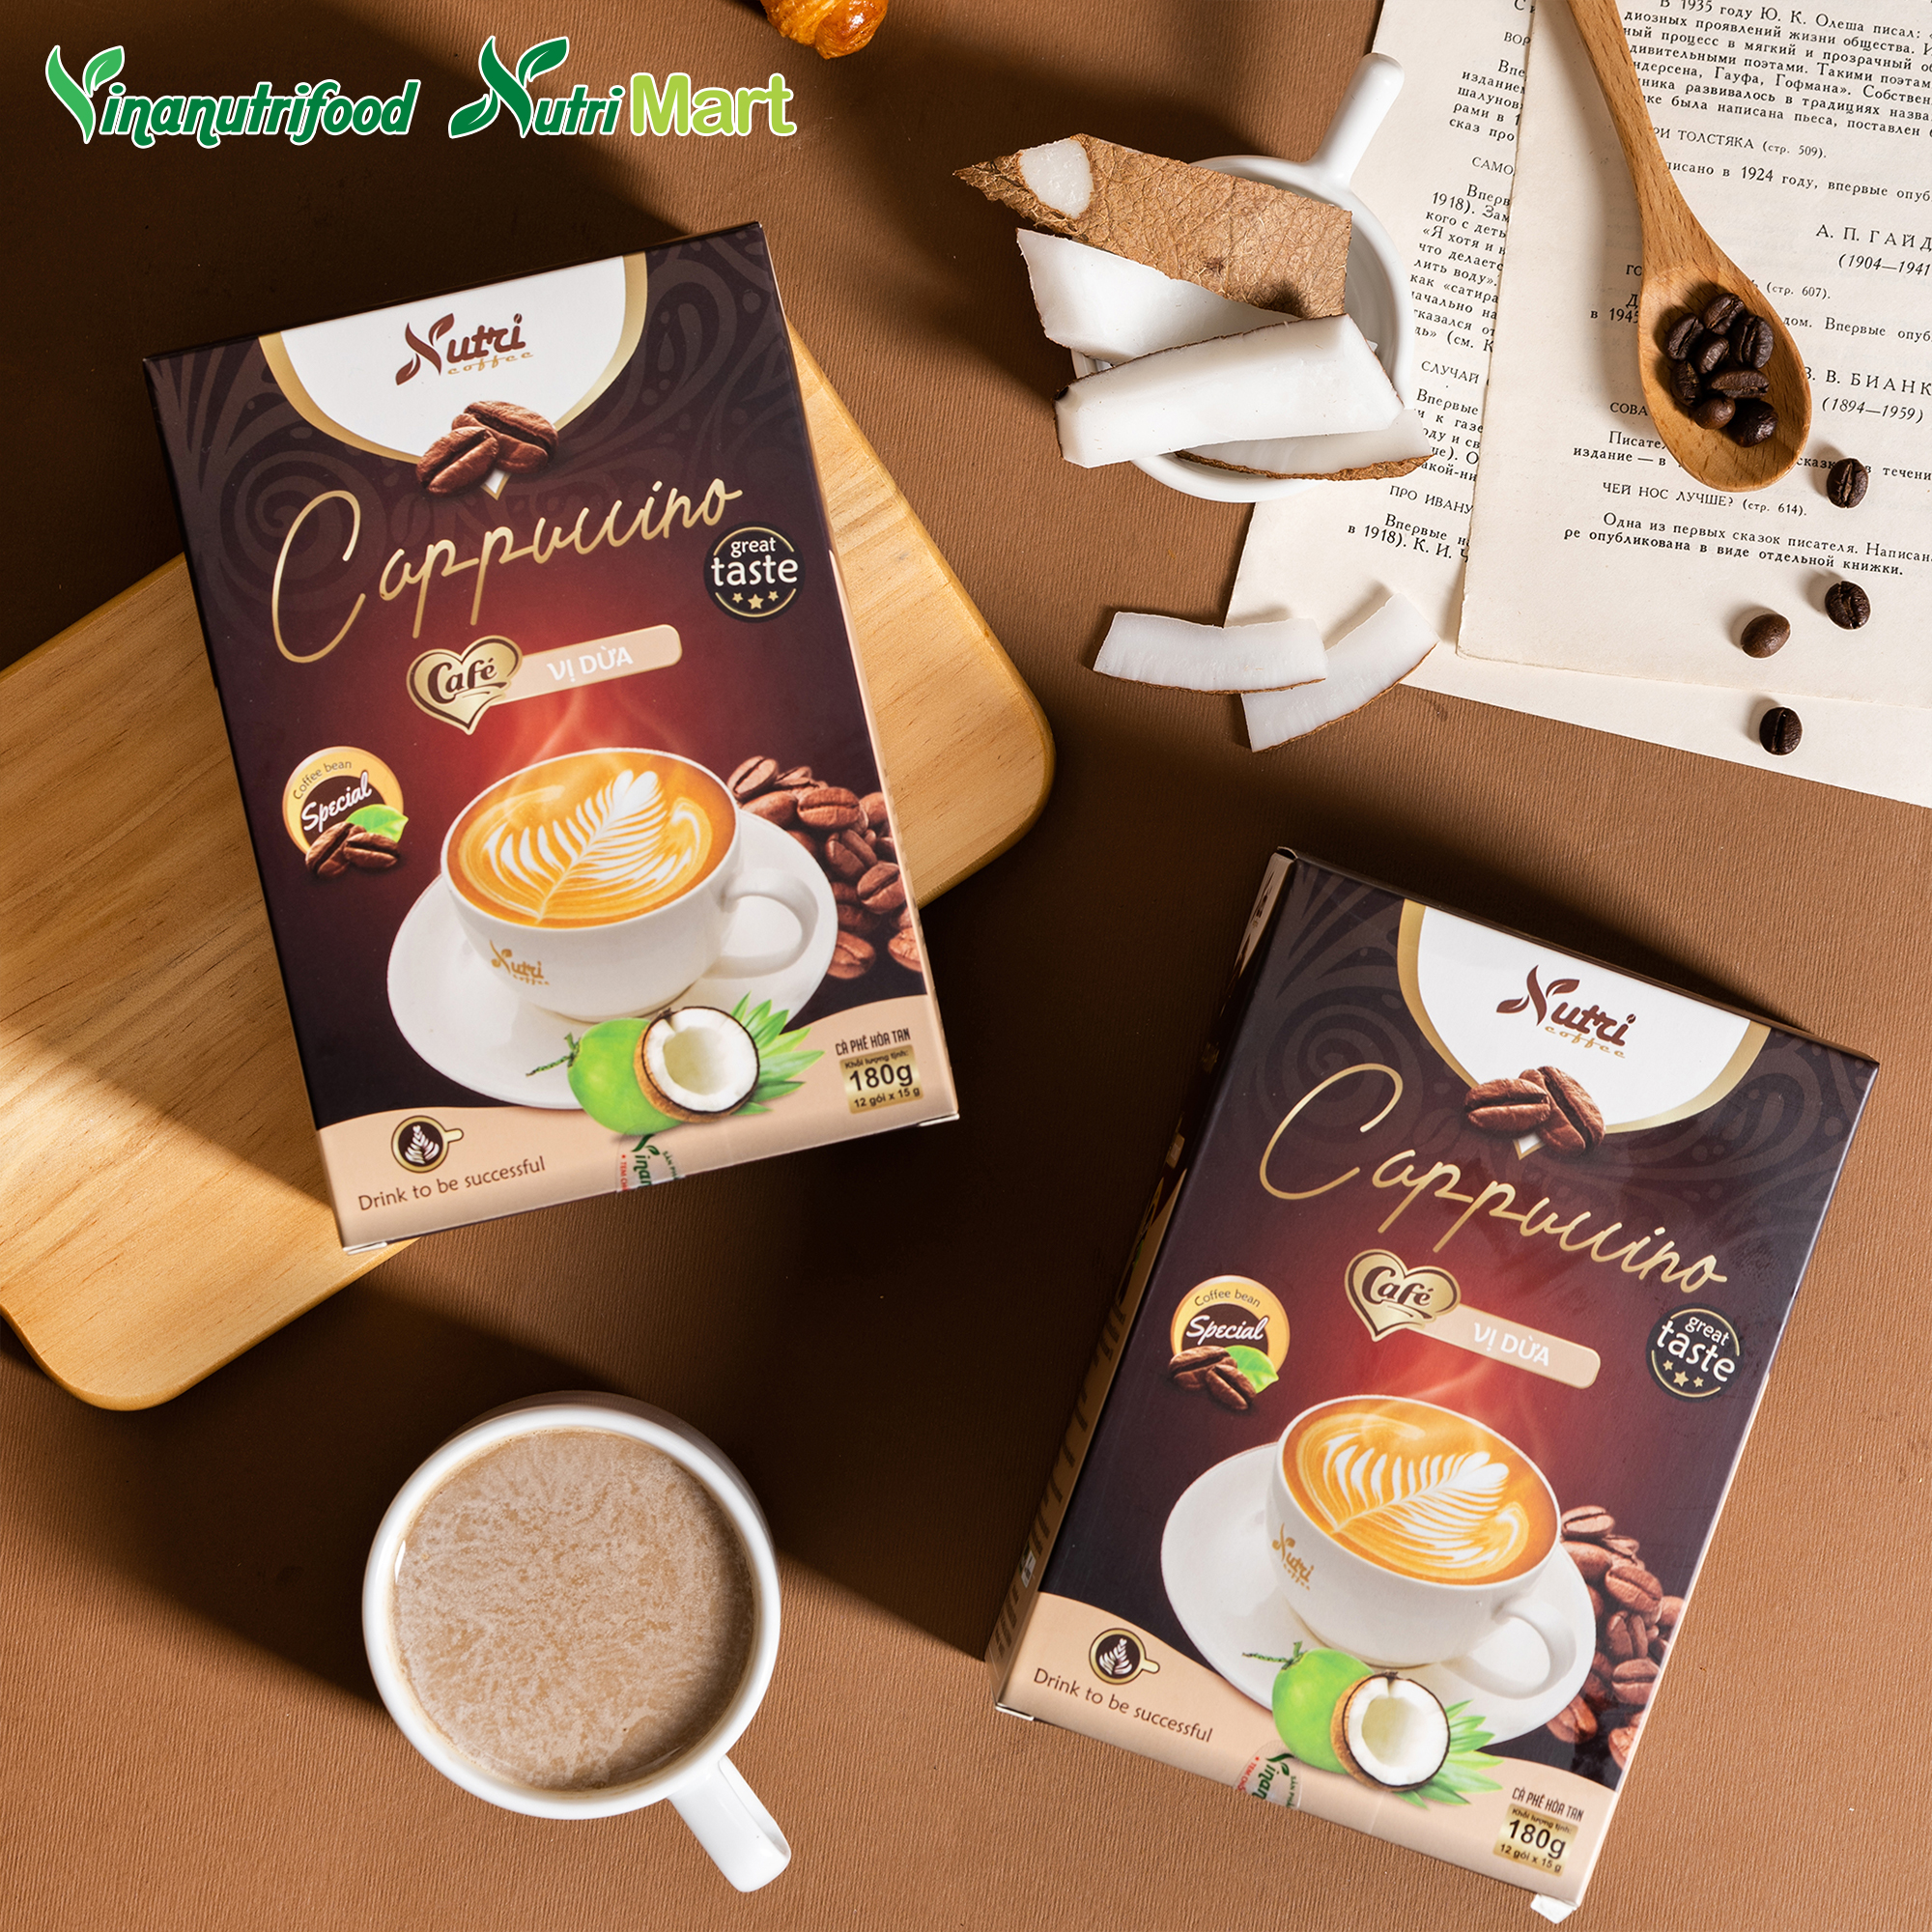 Cà phê capuchino dừa Vinanutrifood C03, cafe có hương vị dừa hảo hạng, tạo nên sự mới mẻ mang đến cảm giác thoải mái, thư thái khi thưởng thức, đảm bảo an toàn thực phẩm đáp ứng đầy đủ tiêu chuẩn GMP - WHO (15g x 12 gói)